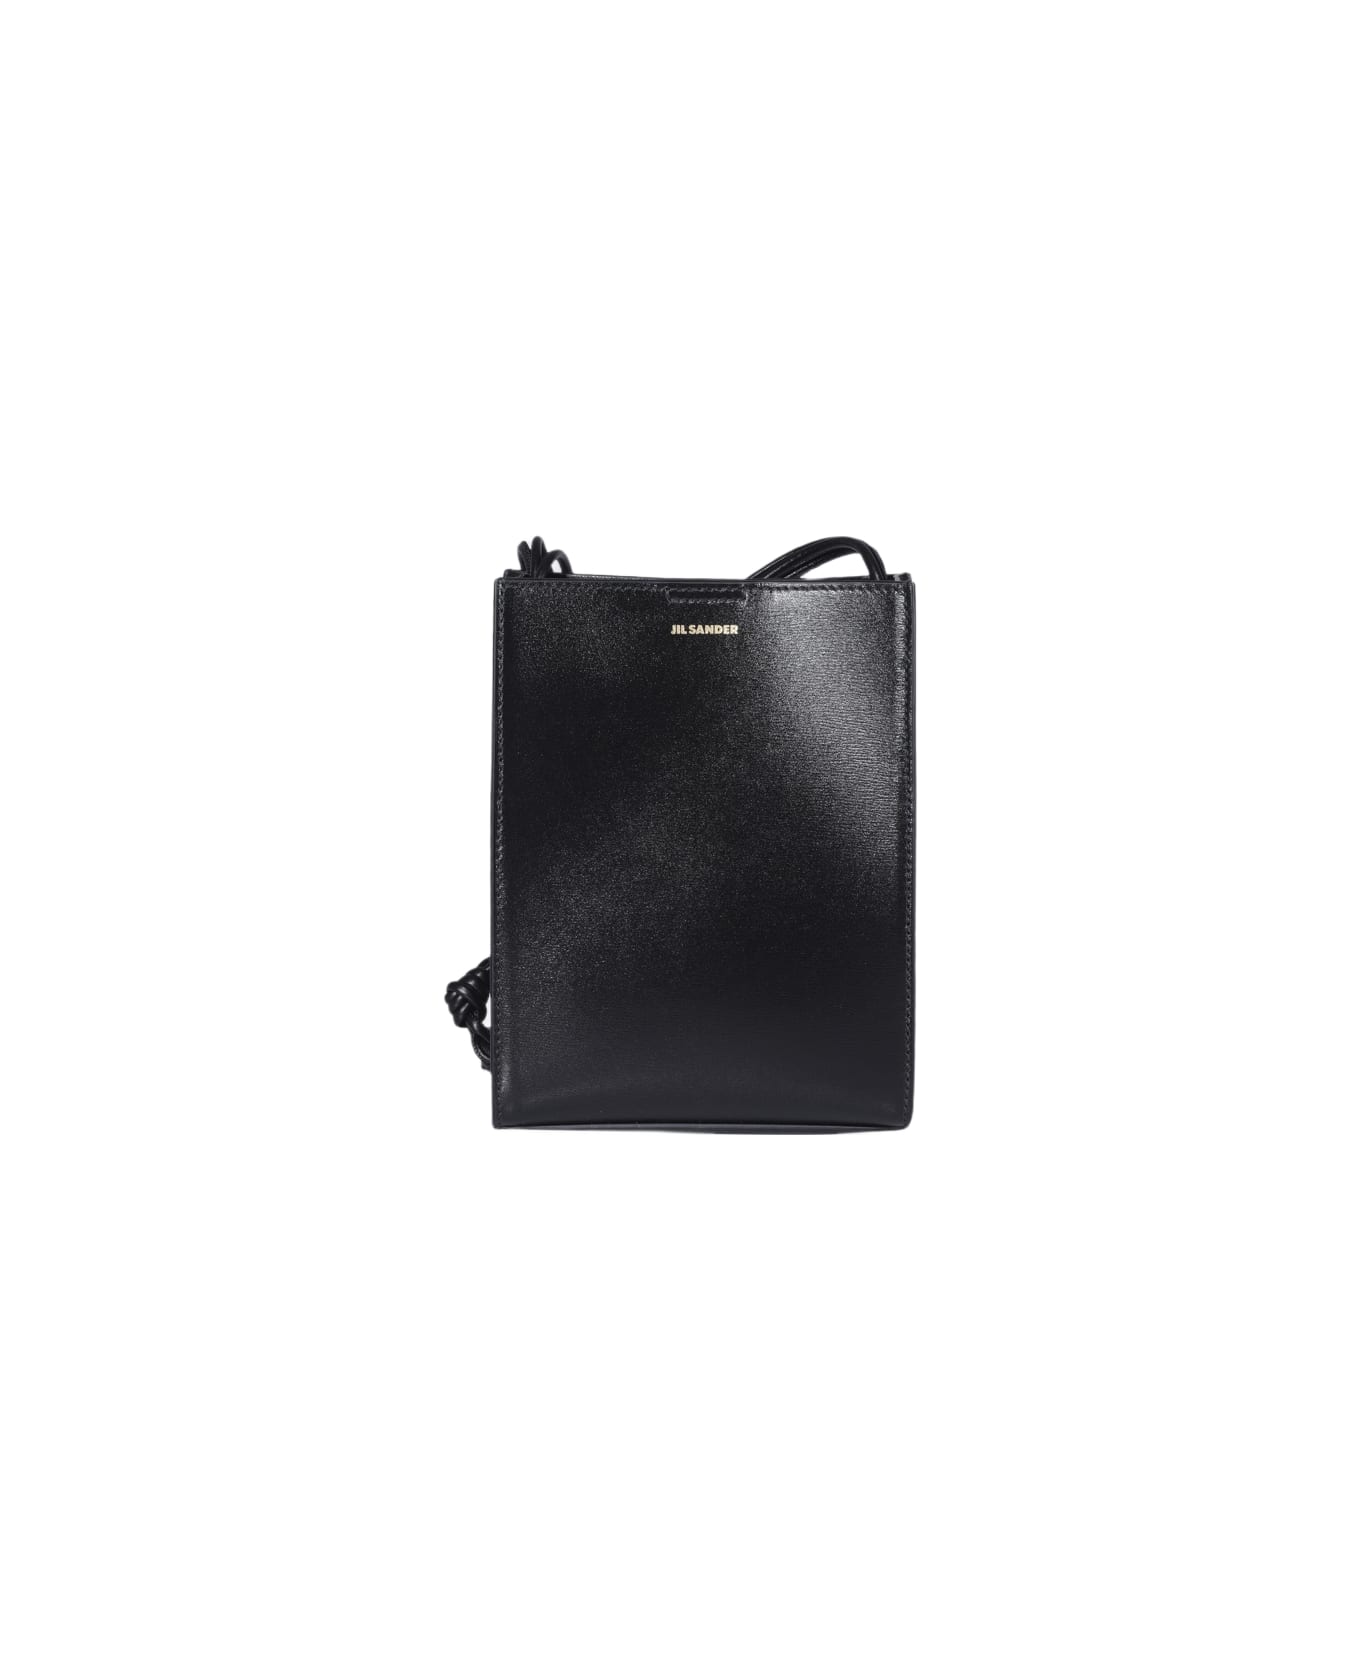 Jil Sander Black Leather Tangle Shoulder Bag - Black